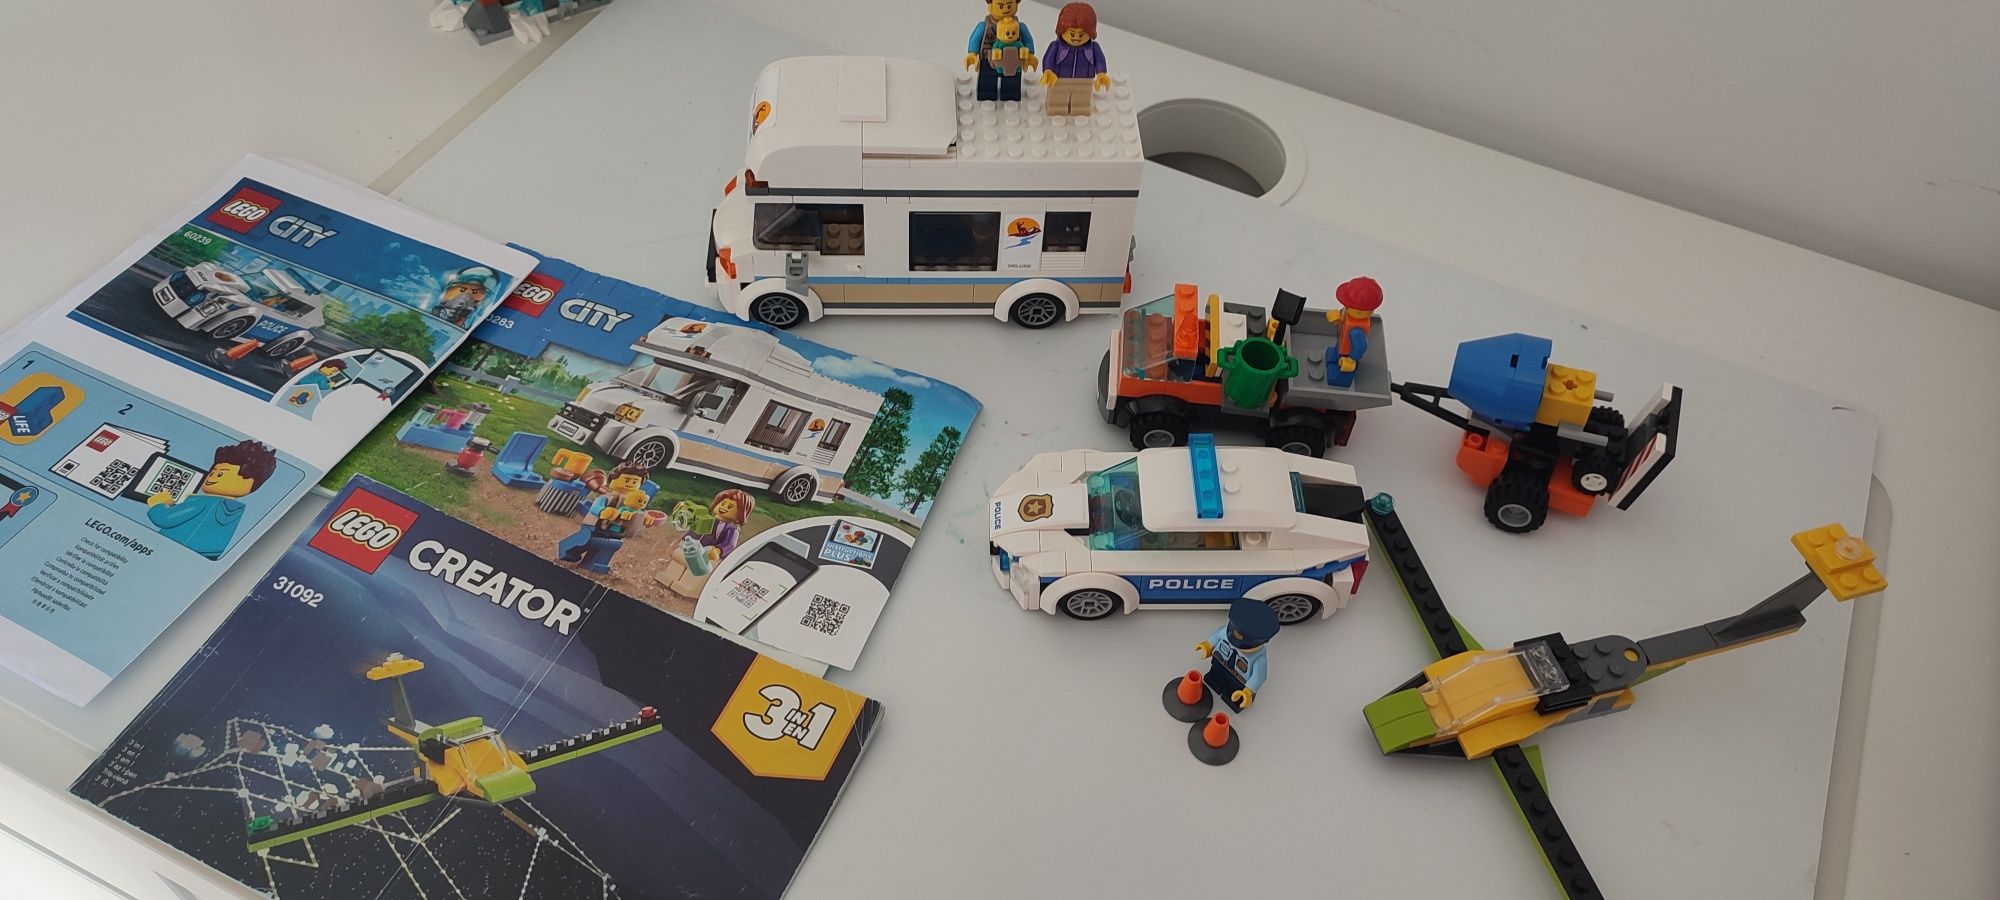 Vând lot Lego City, Rulota și Camion